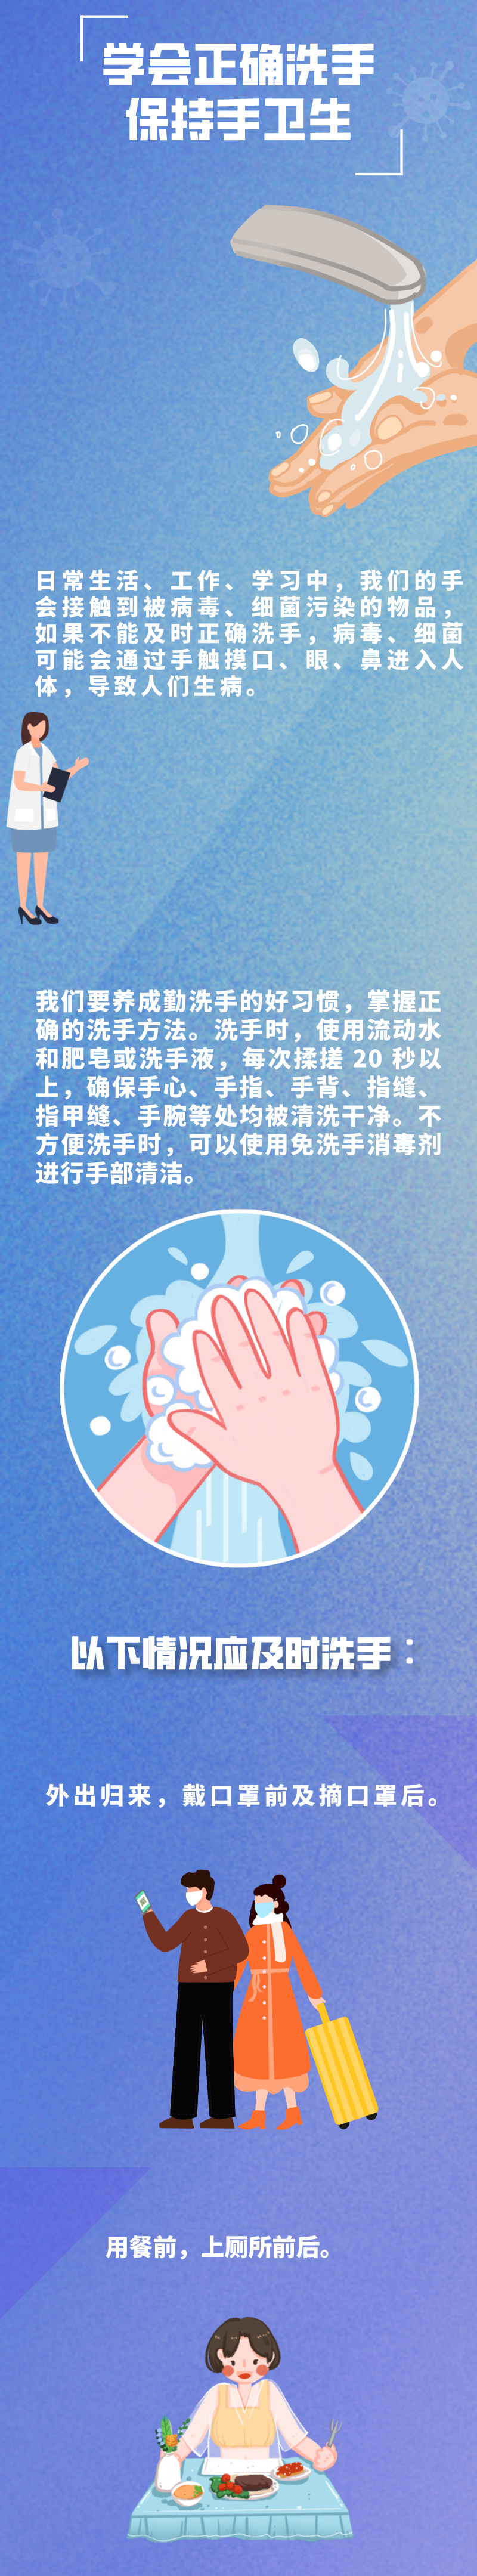 [健康科普]学会正确洗手 保持手卫生w2.jpg